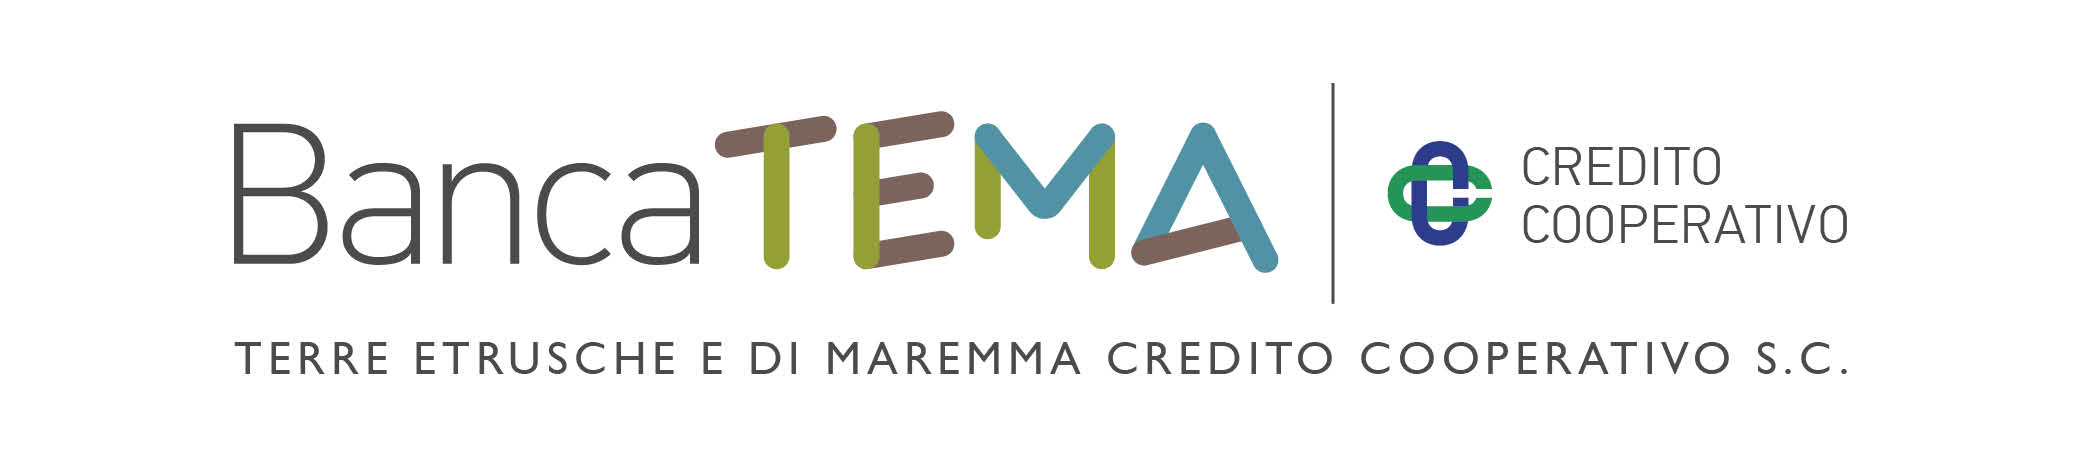 Logo Banca TEMA